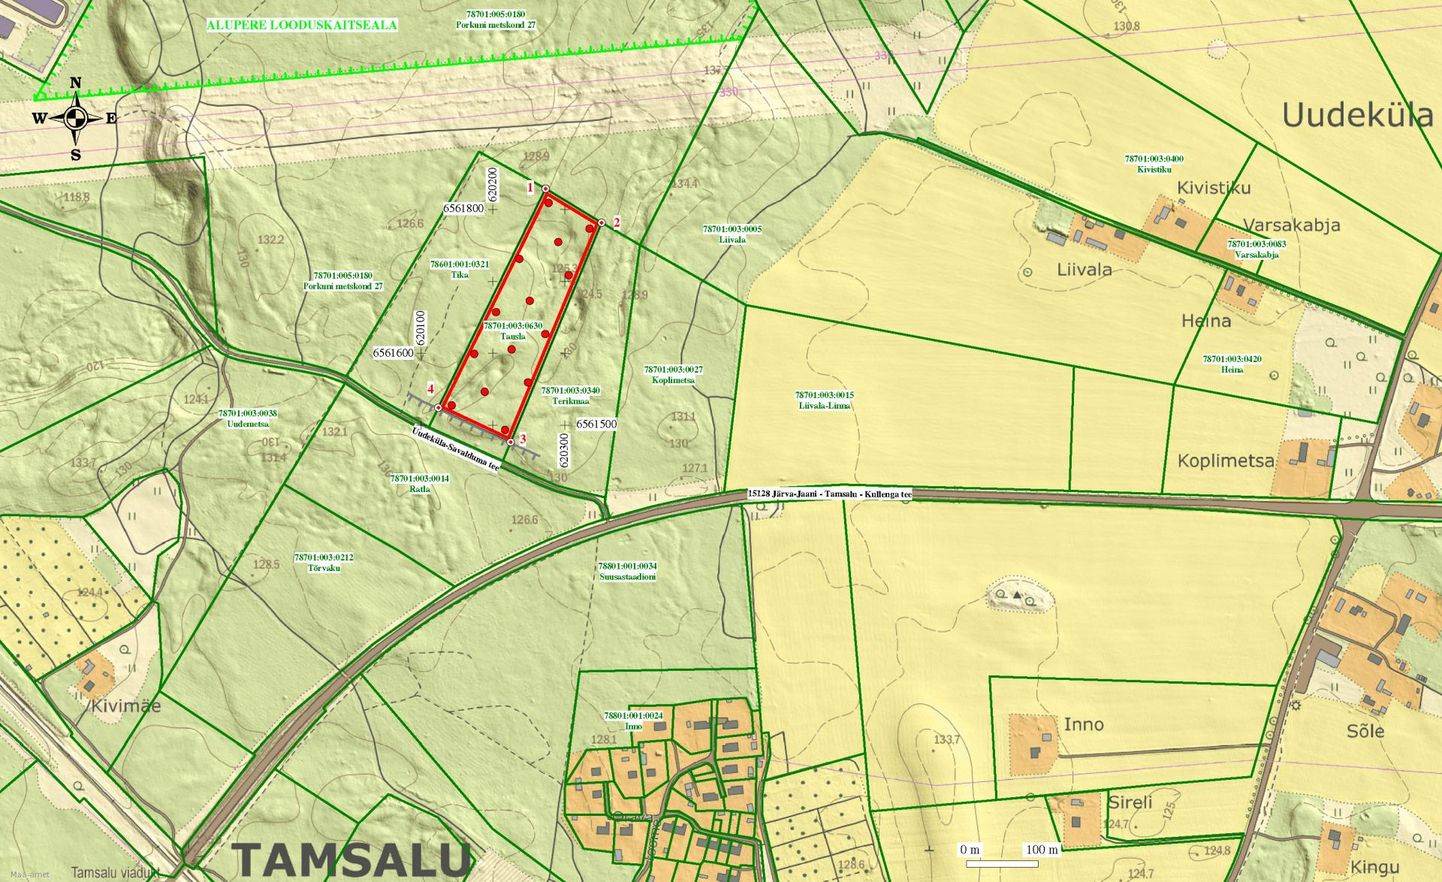 Uudeküla tulevase liiva- ja kruusakarjääri ala on kaardil markeeritud punase kastikesega.